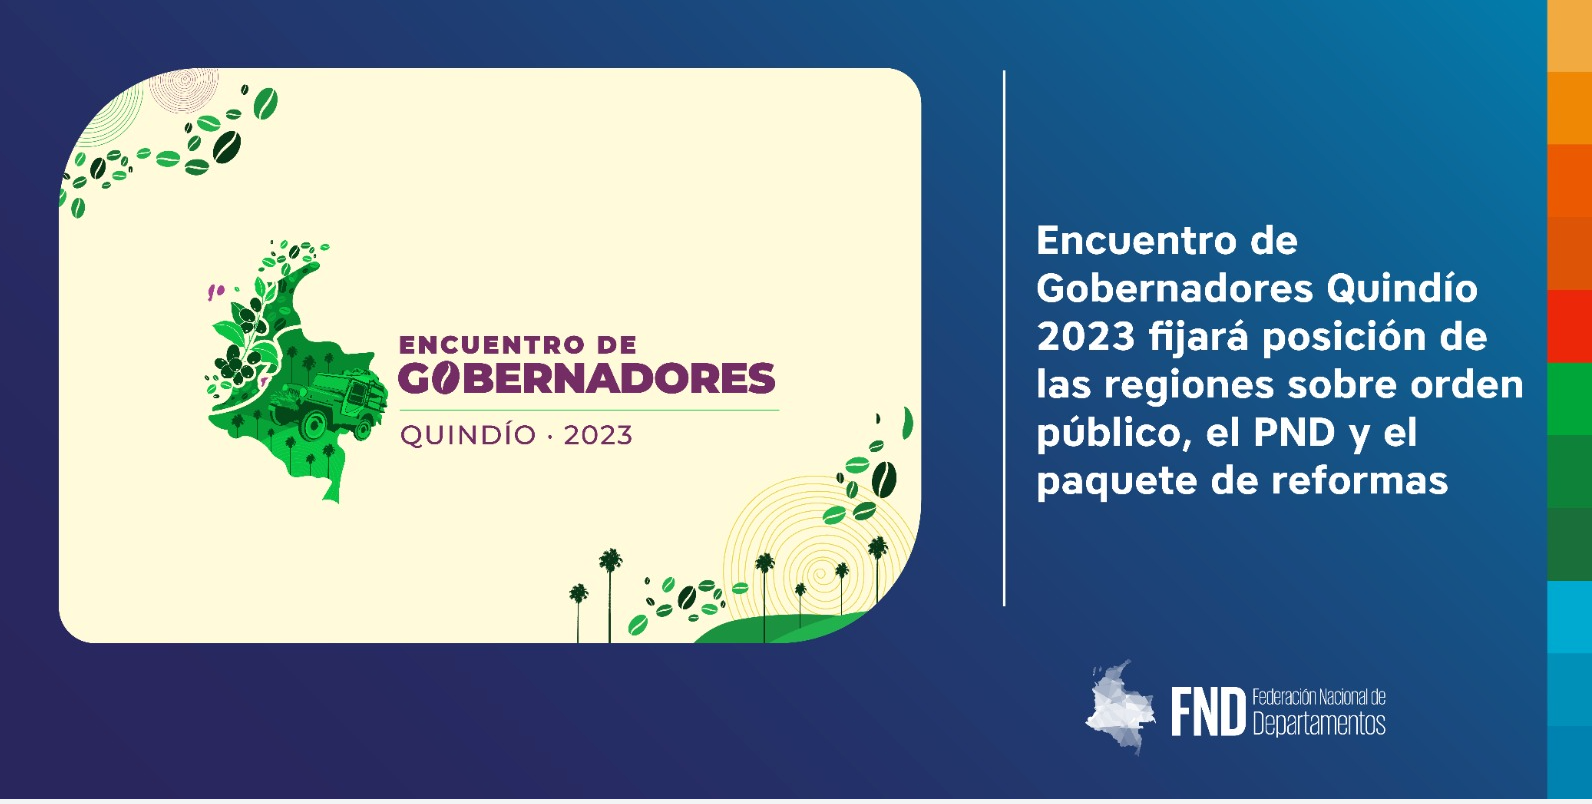 image Encuentro de Gobernadores Quindío 2023 fijará posición de las regiones sobre orden público, el PND y el paquete de reformas